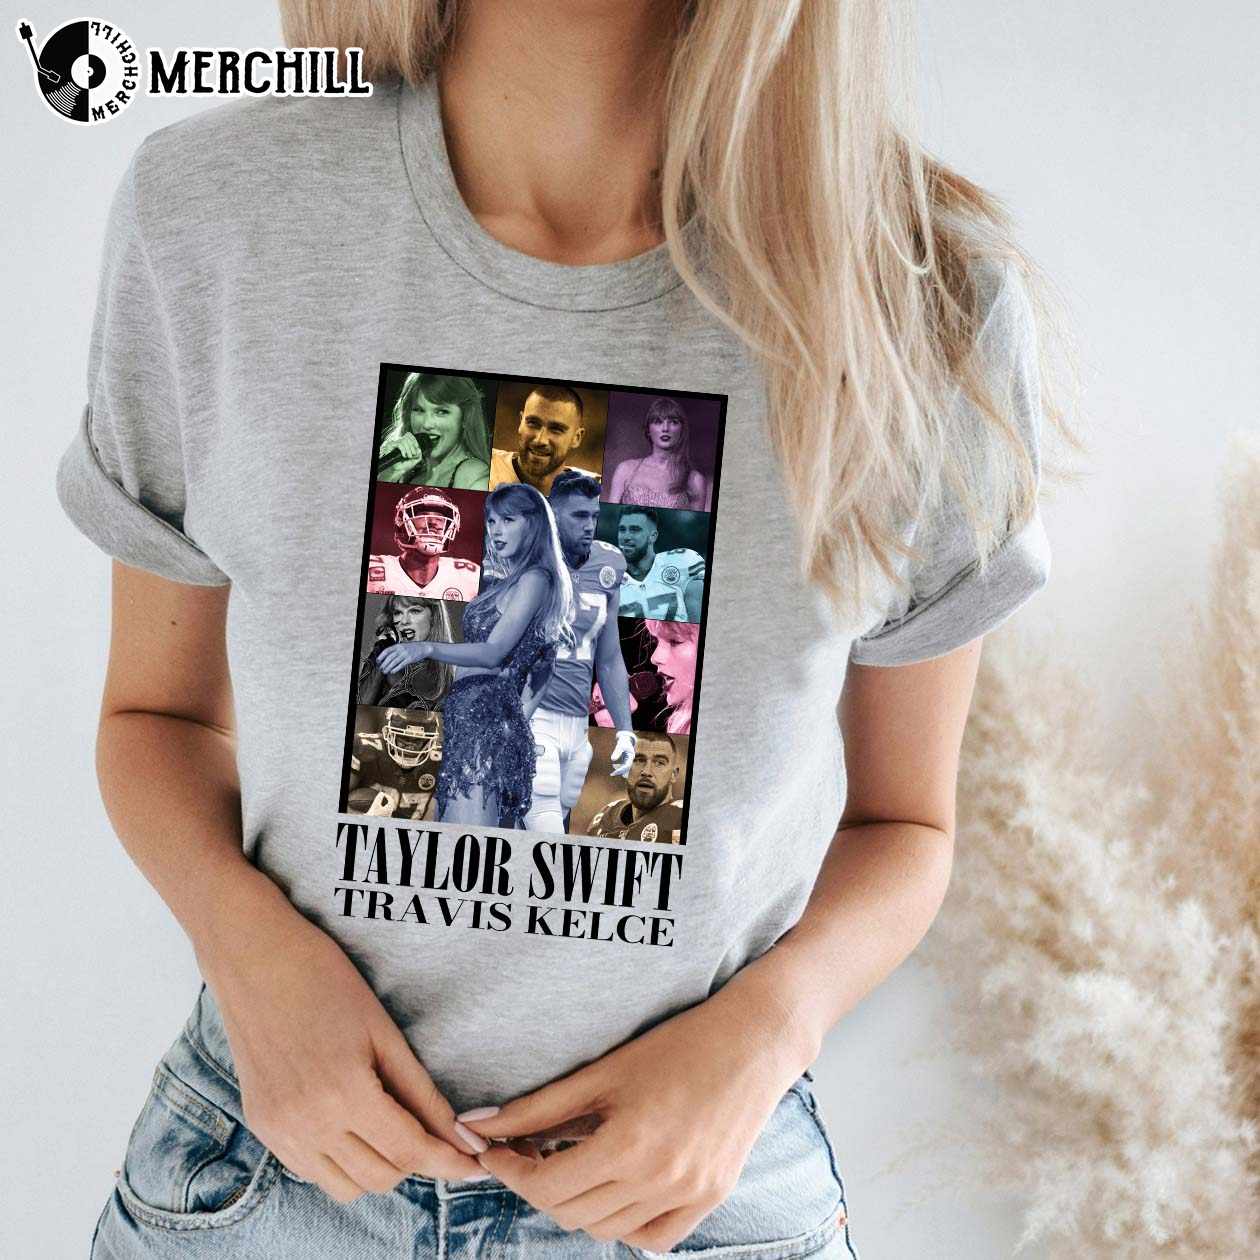 Taylor Swift Eras Tour Official Merchandise Beige T-shirt XL BRAND